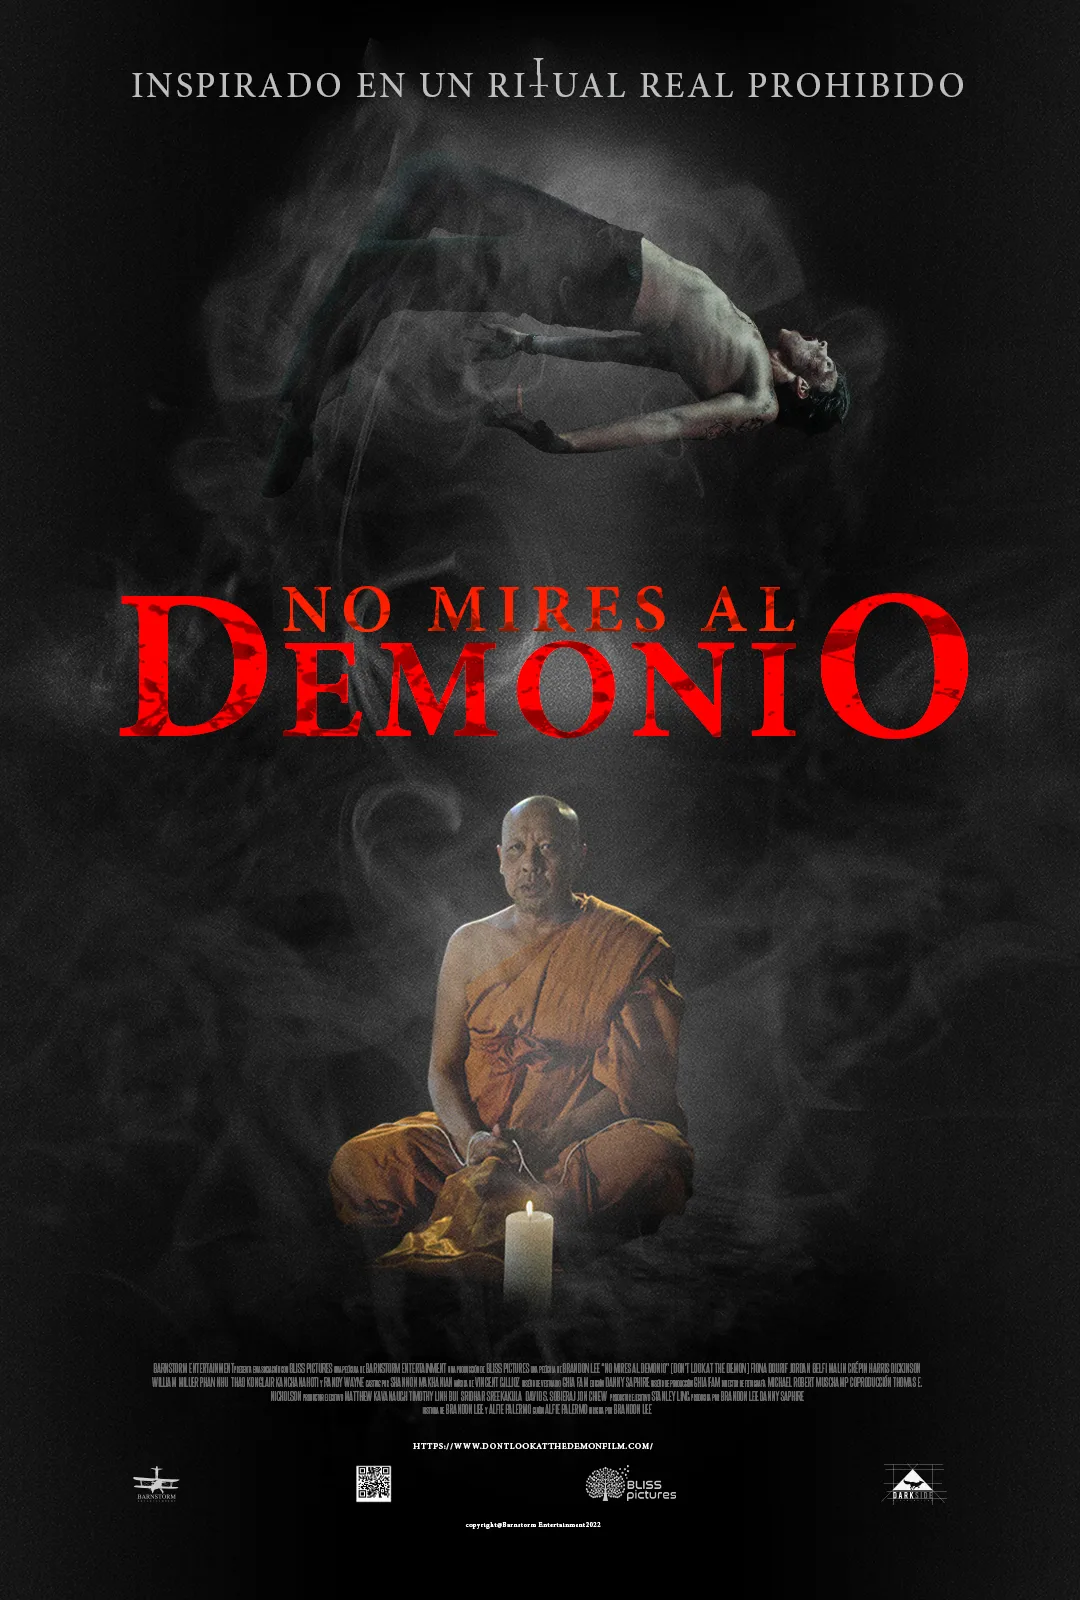 Poster no mires al demonio.